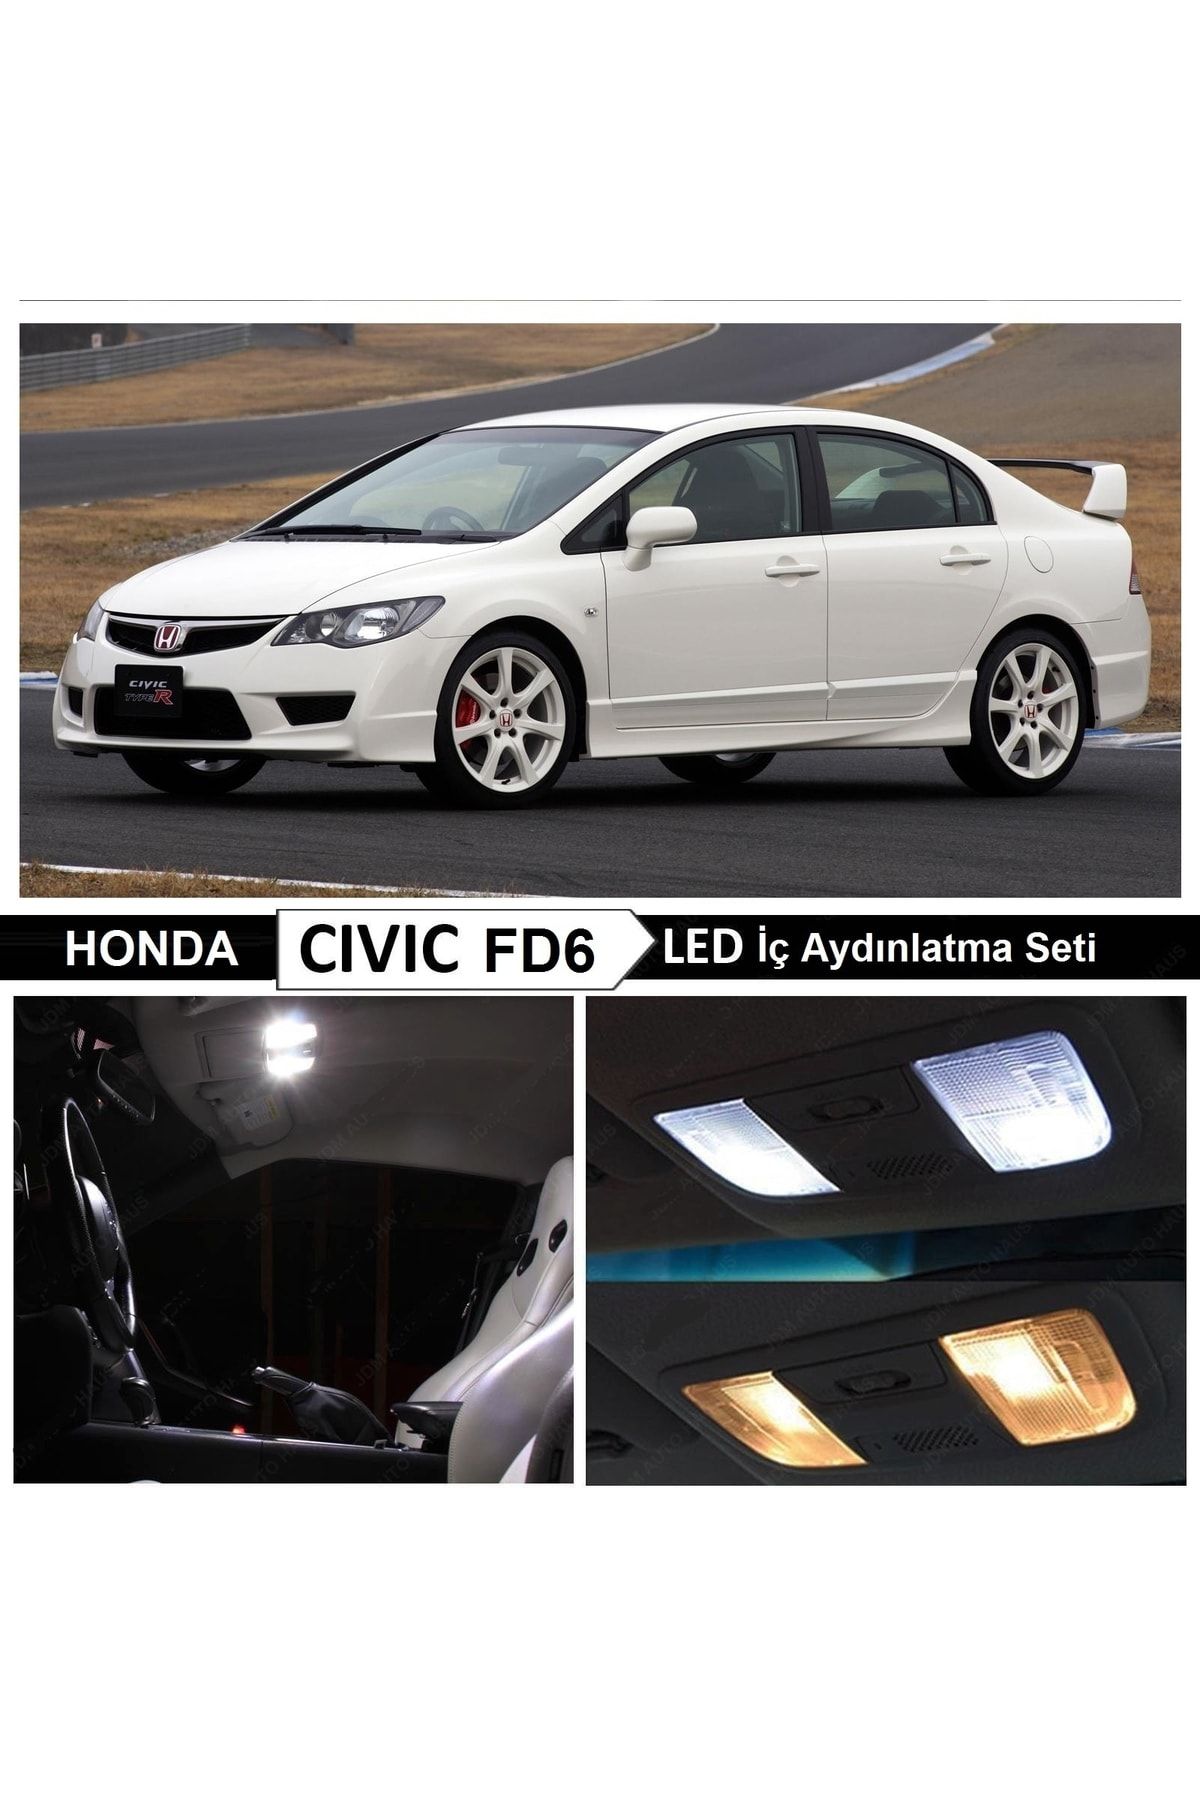 Fardoktoru Honda Civic Fd6 Led Iç Aydınlatma Seti Beyaz 8 Adet